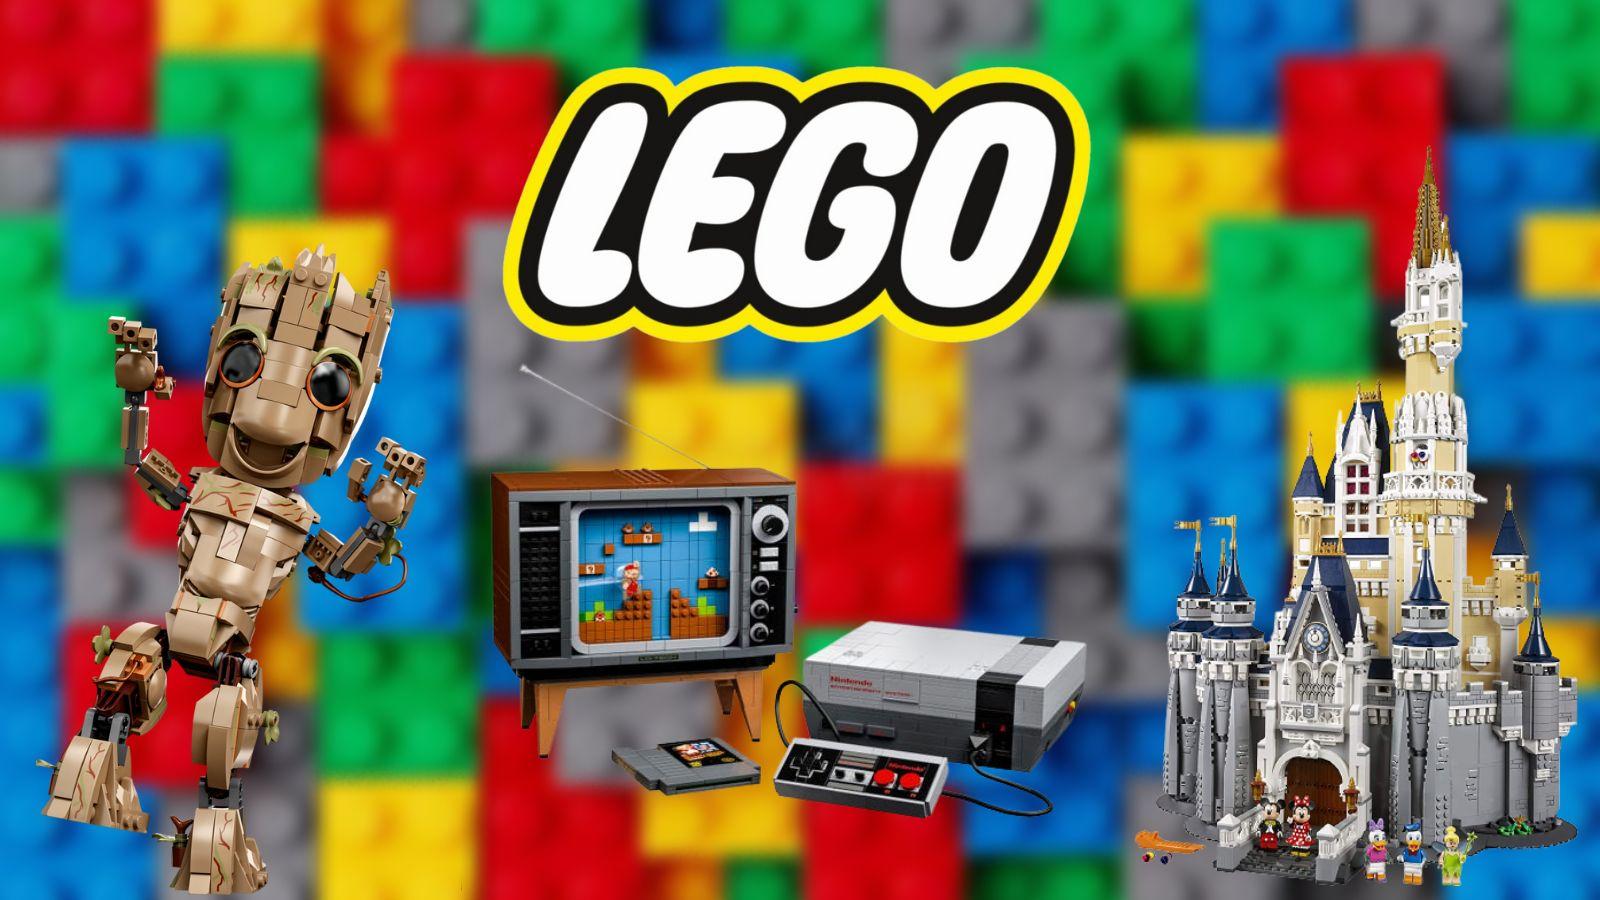 Groot, NES, Disney Lego sets